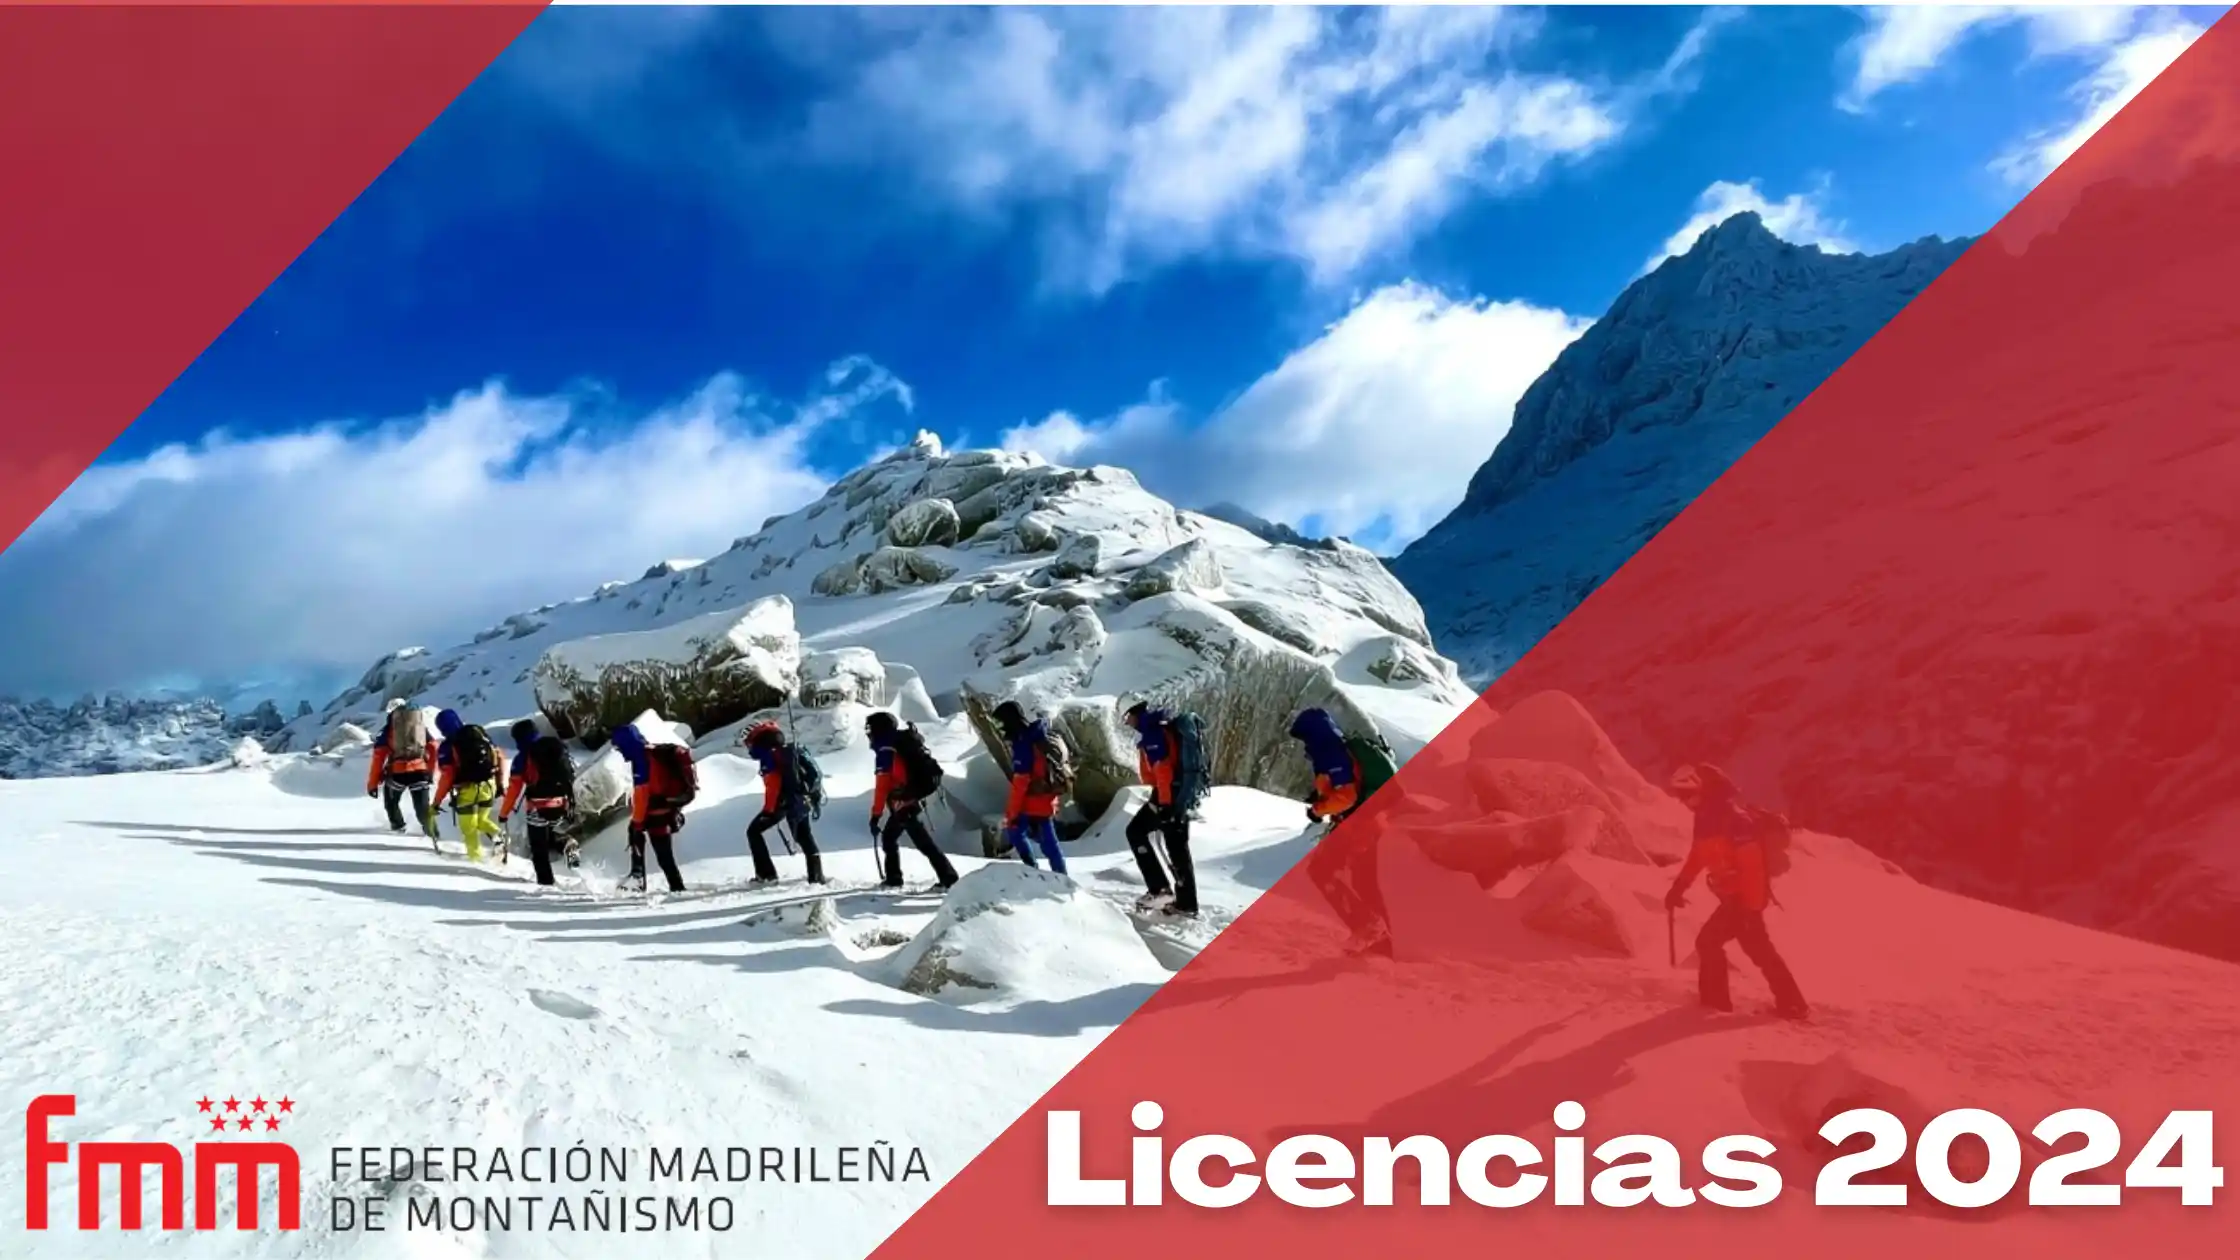 las nuevas tarifas de la federacio madrileña de montañismo de los seguros de montaña